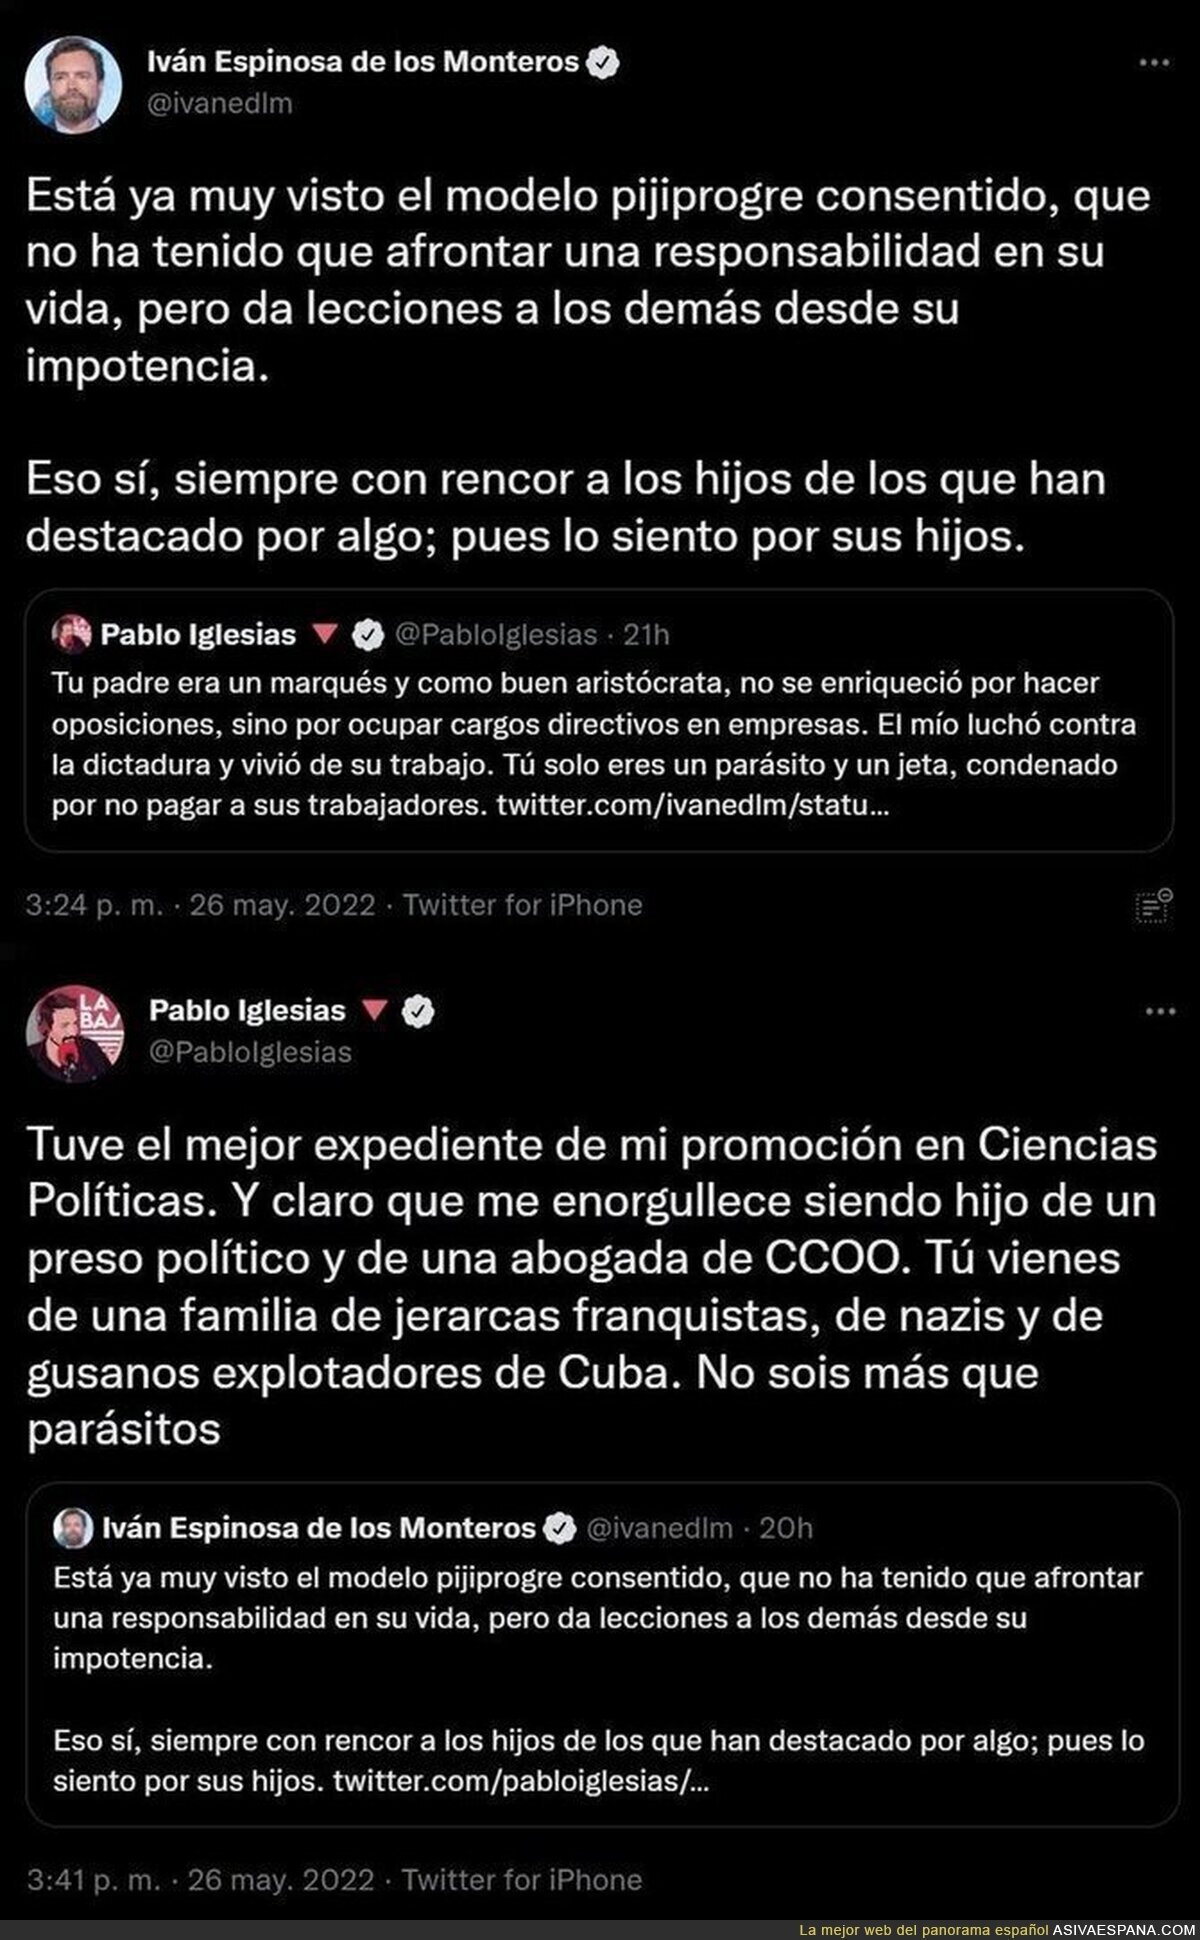 La apoteósica respuesta de Pablo Iglesias a Iván Espinosa de los Monteros que le ha dejado totalmente en las lonas